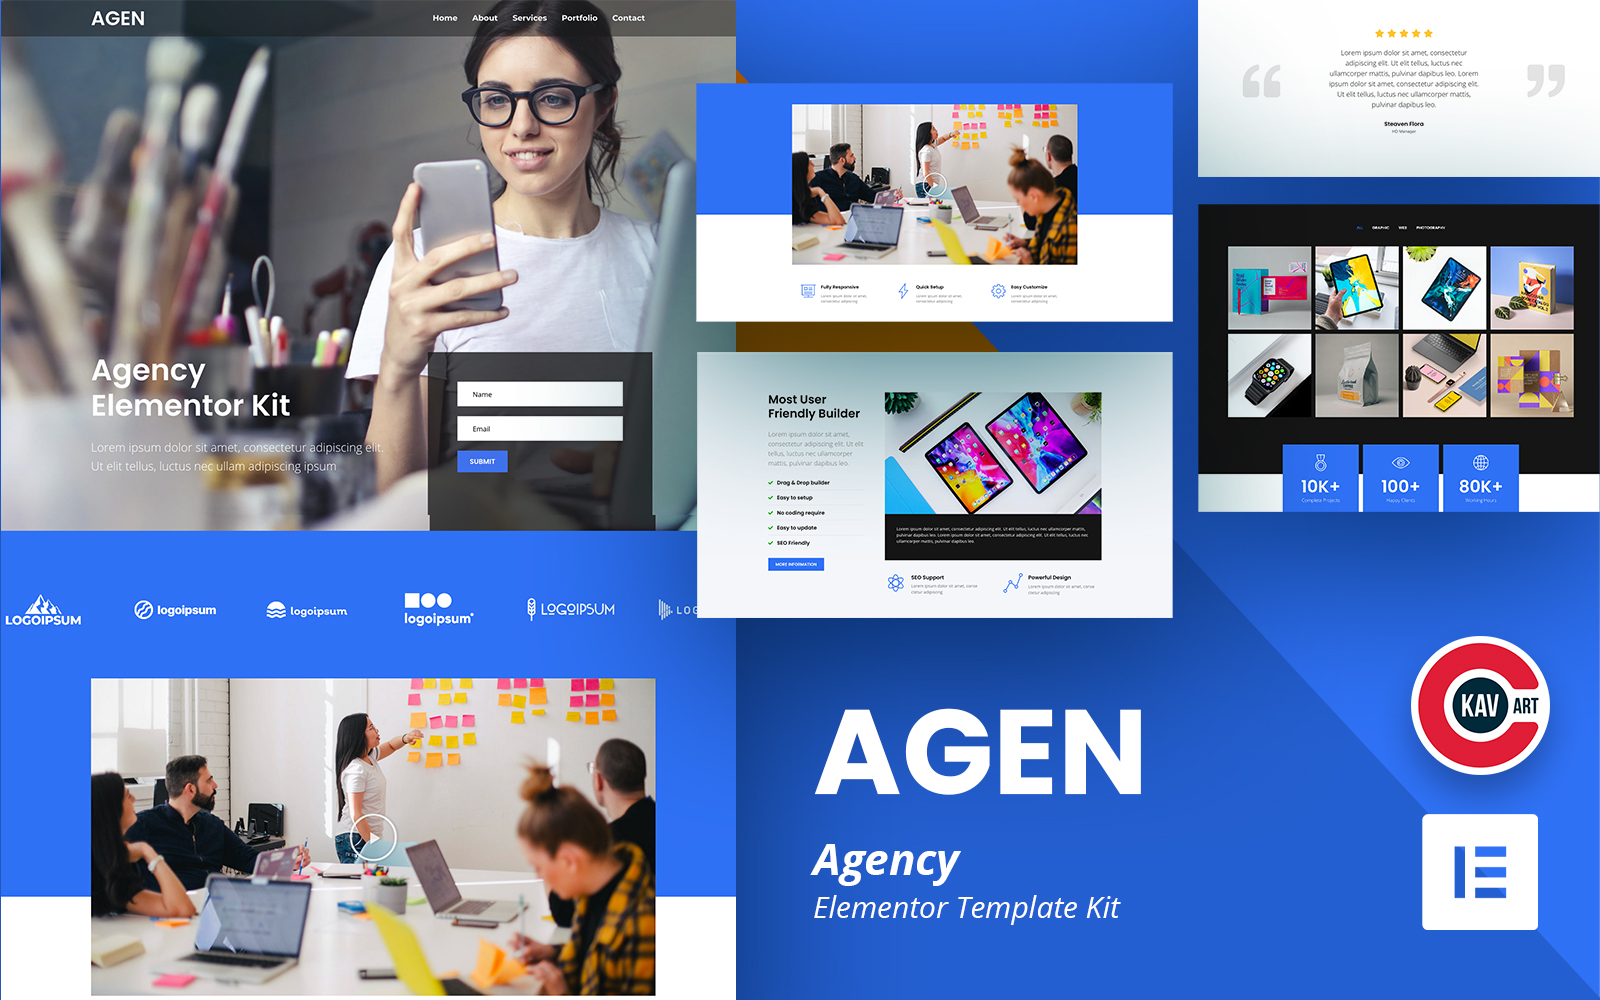 Agen - Agency Elementor Kit